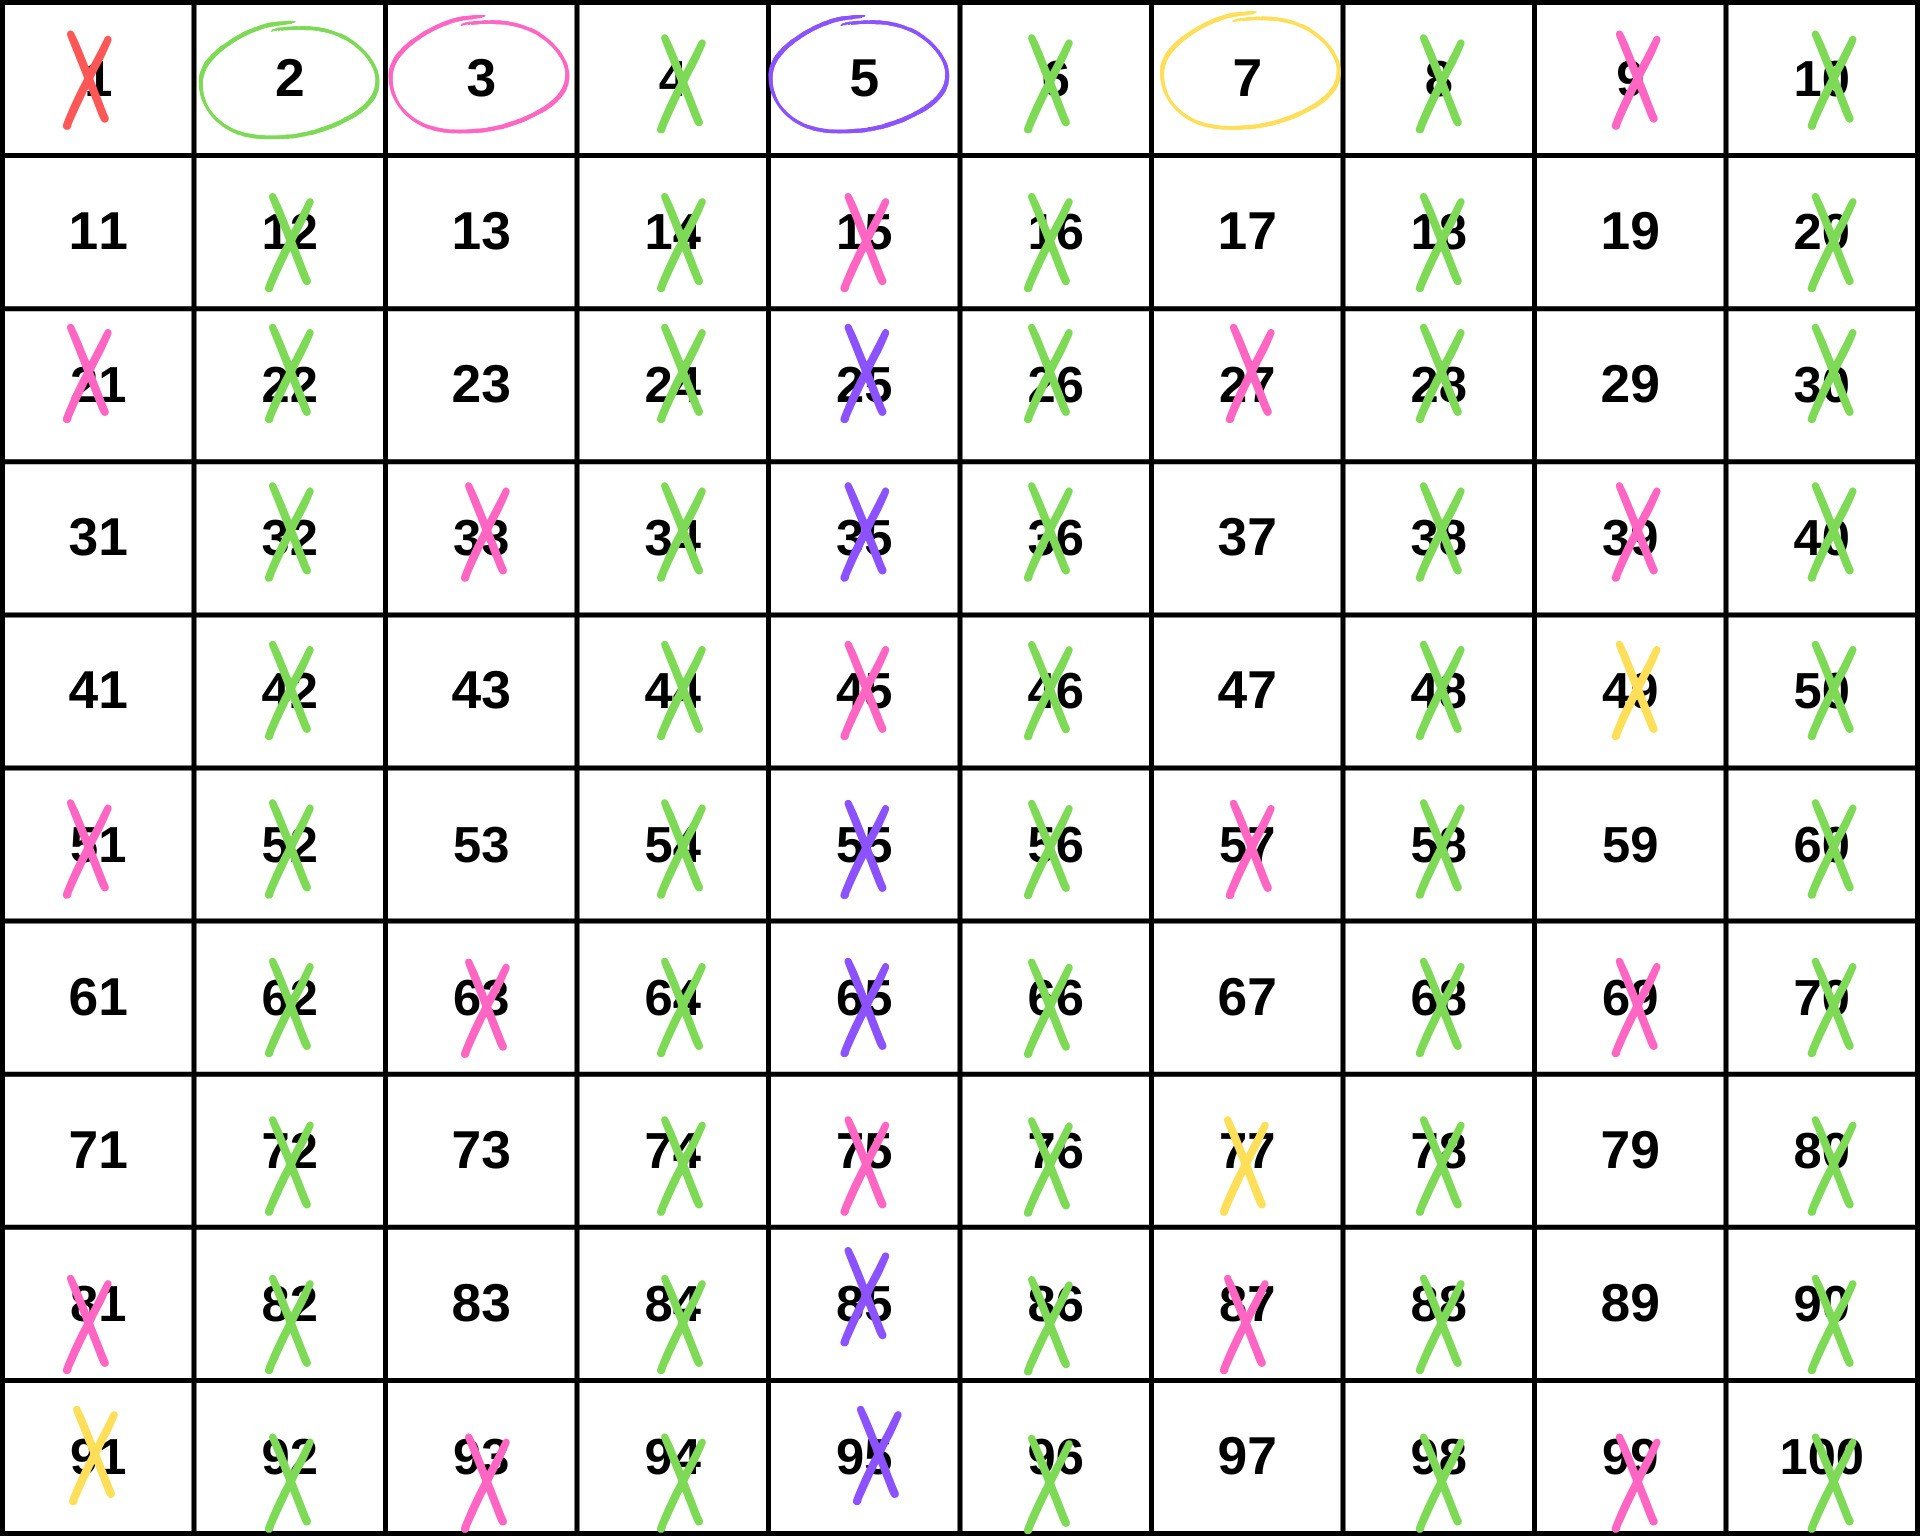 Crivo de Erastótene com números de 1 a 100 para descobrir quais são os números primos.